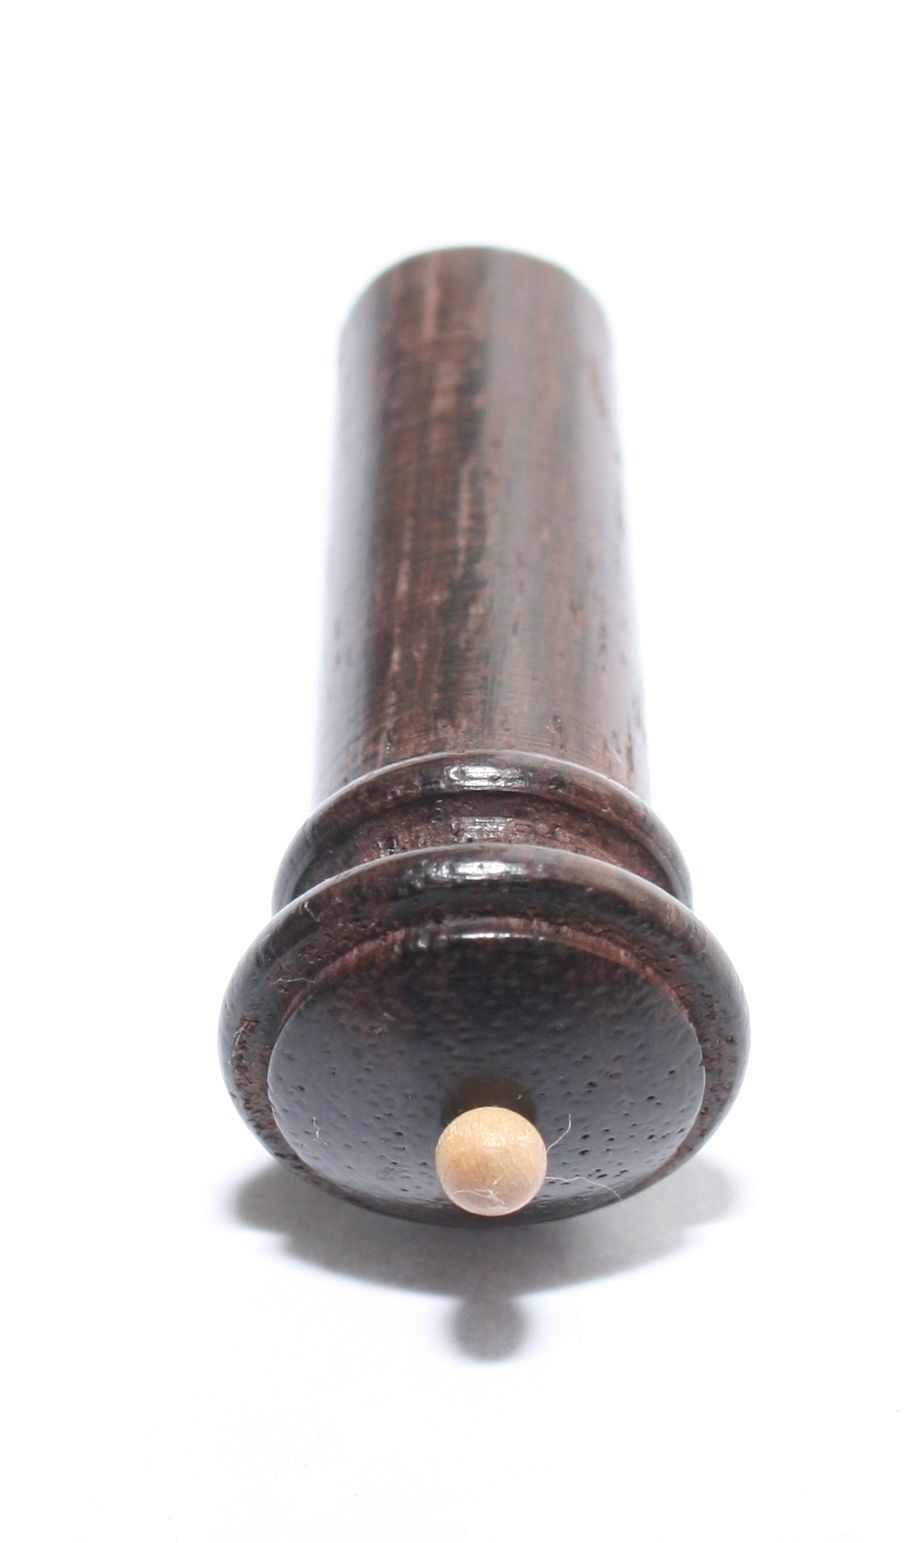 Viola endpin-"Round Flat" Rosewood-White pin